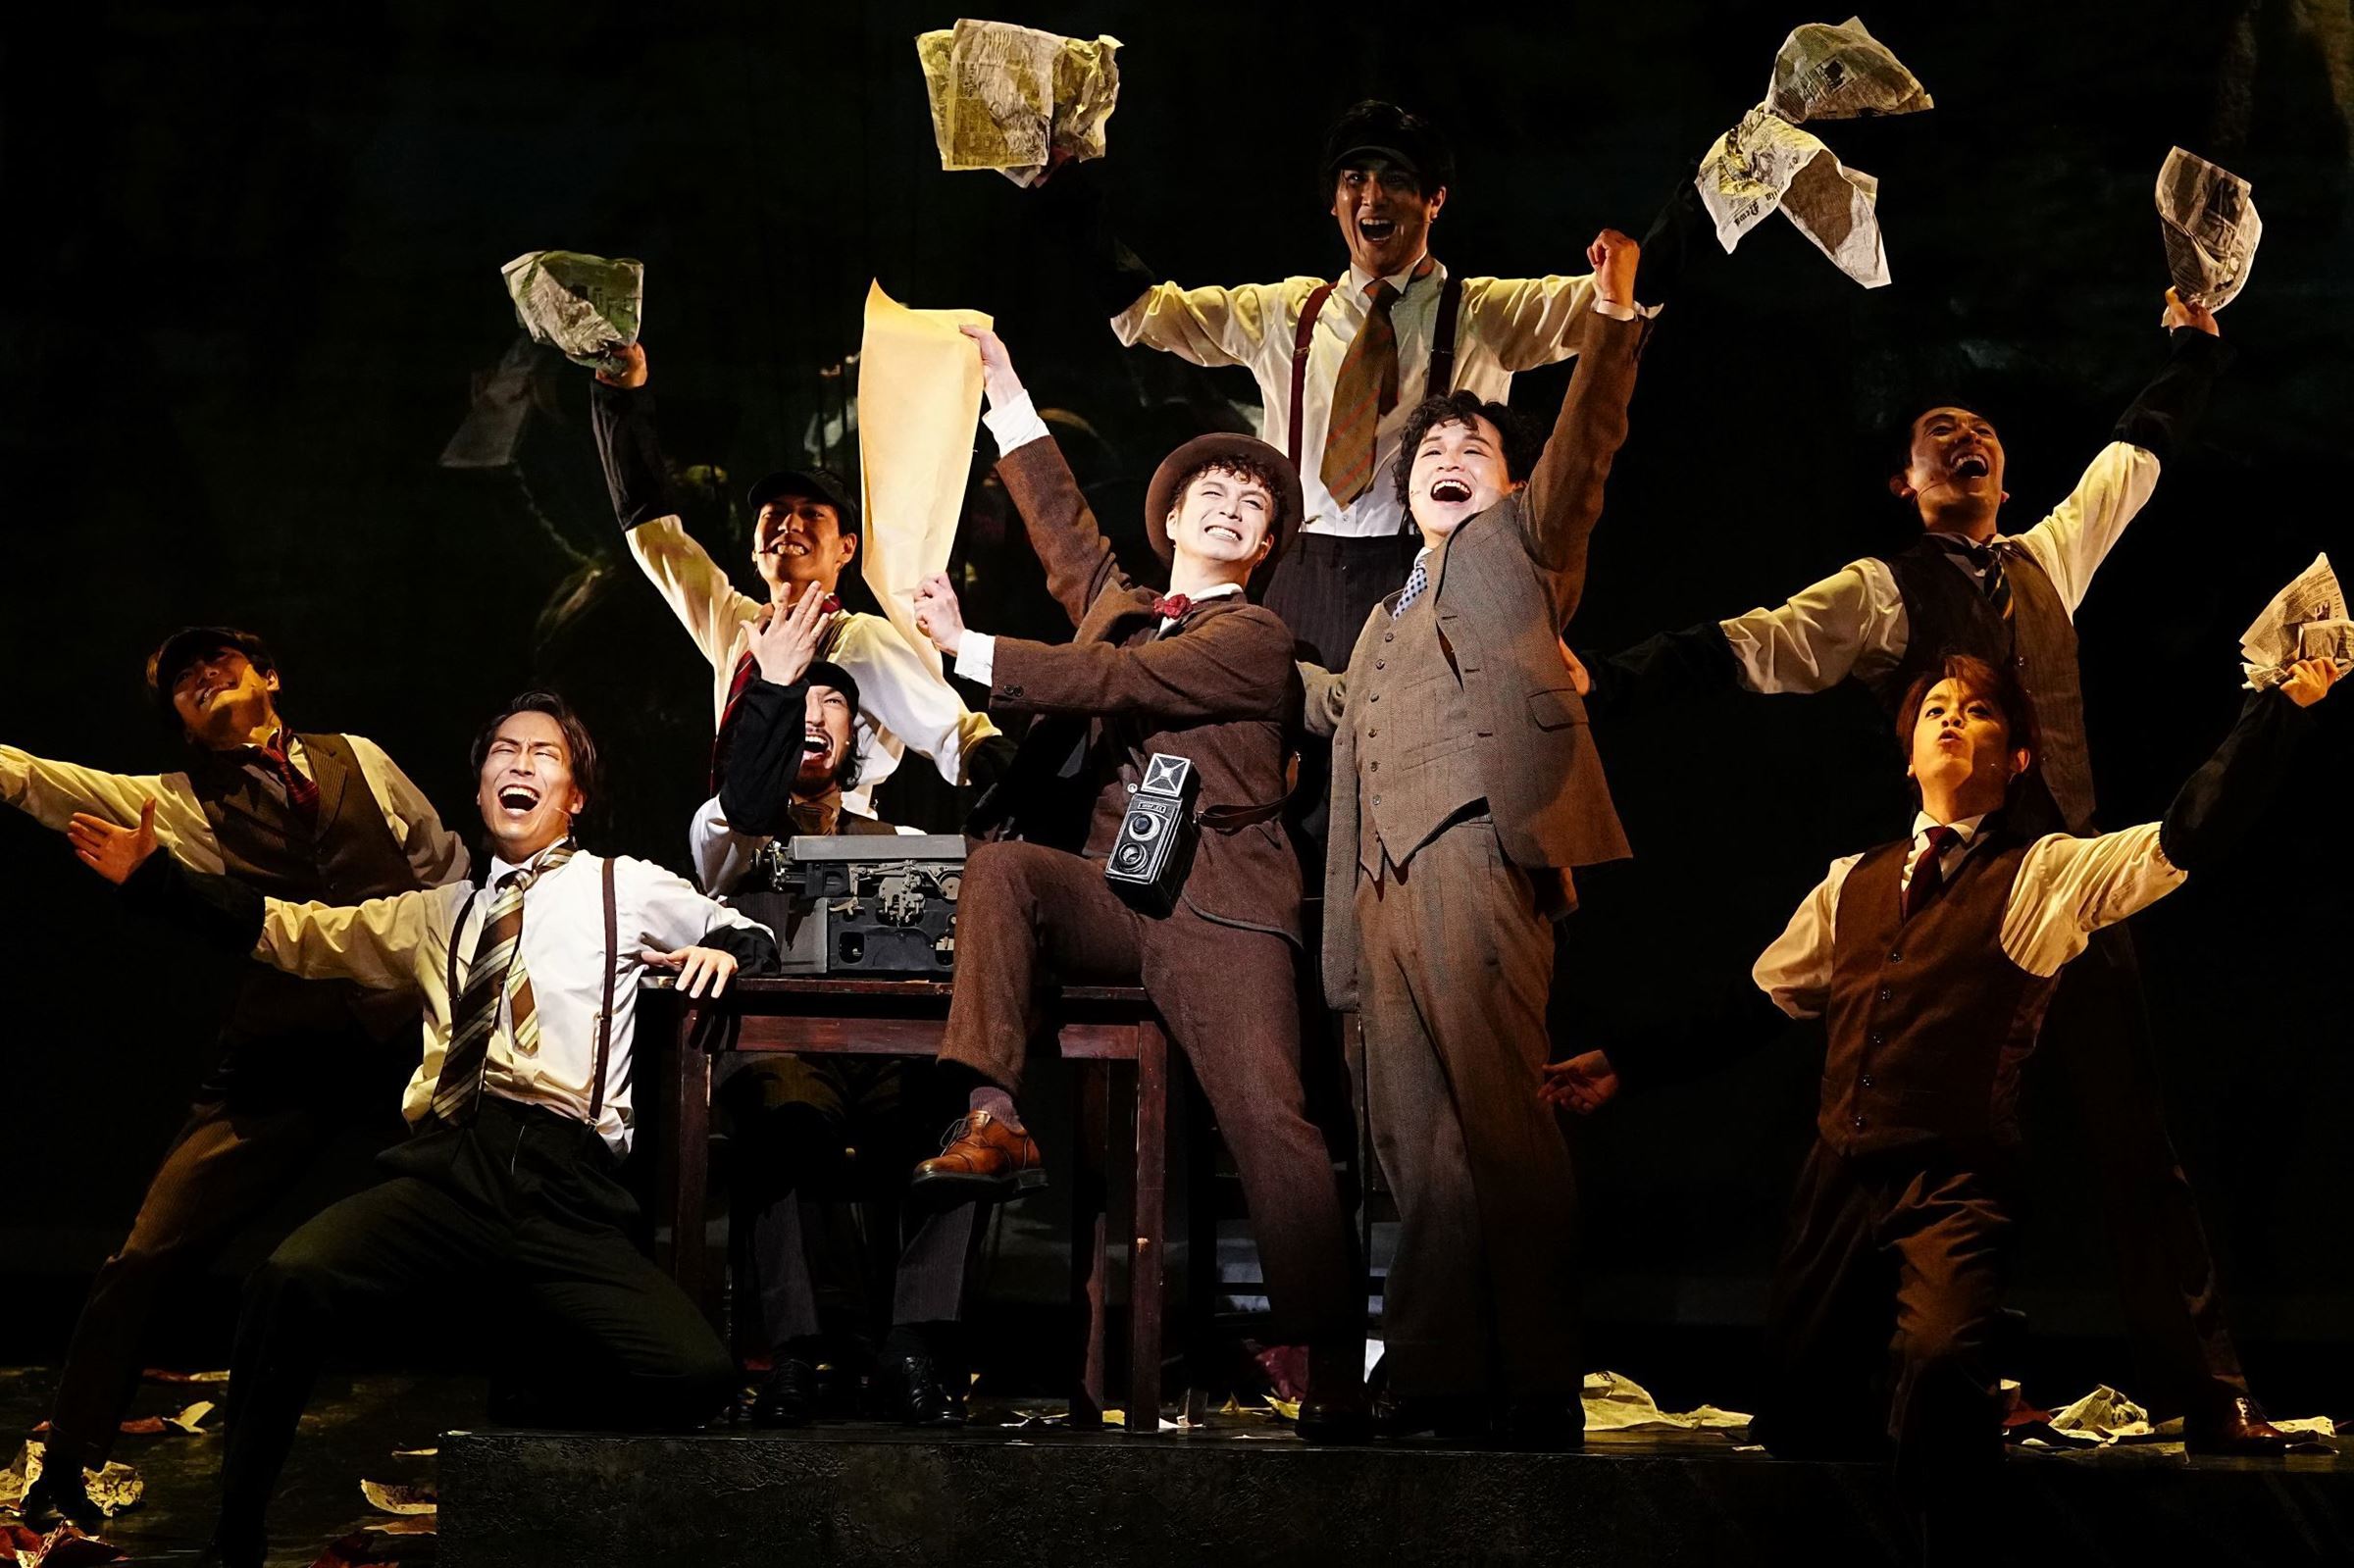 退廃的なロンドンの街を舞台に浮かび上がる人間社会の闇 ミュージカル ジャック ザ リッパー 待望の日本演出版が開幕 ニコニコニュース